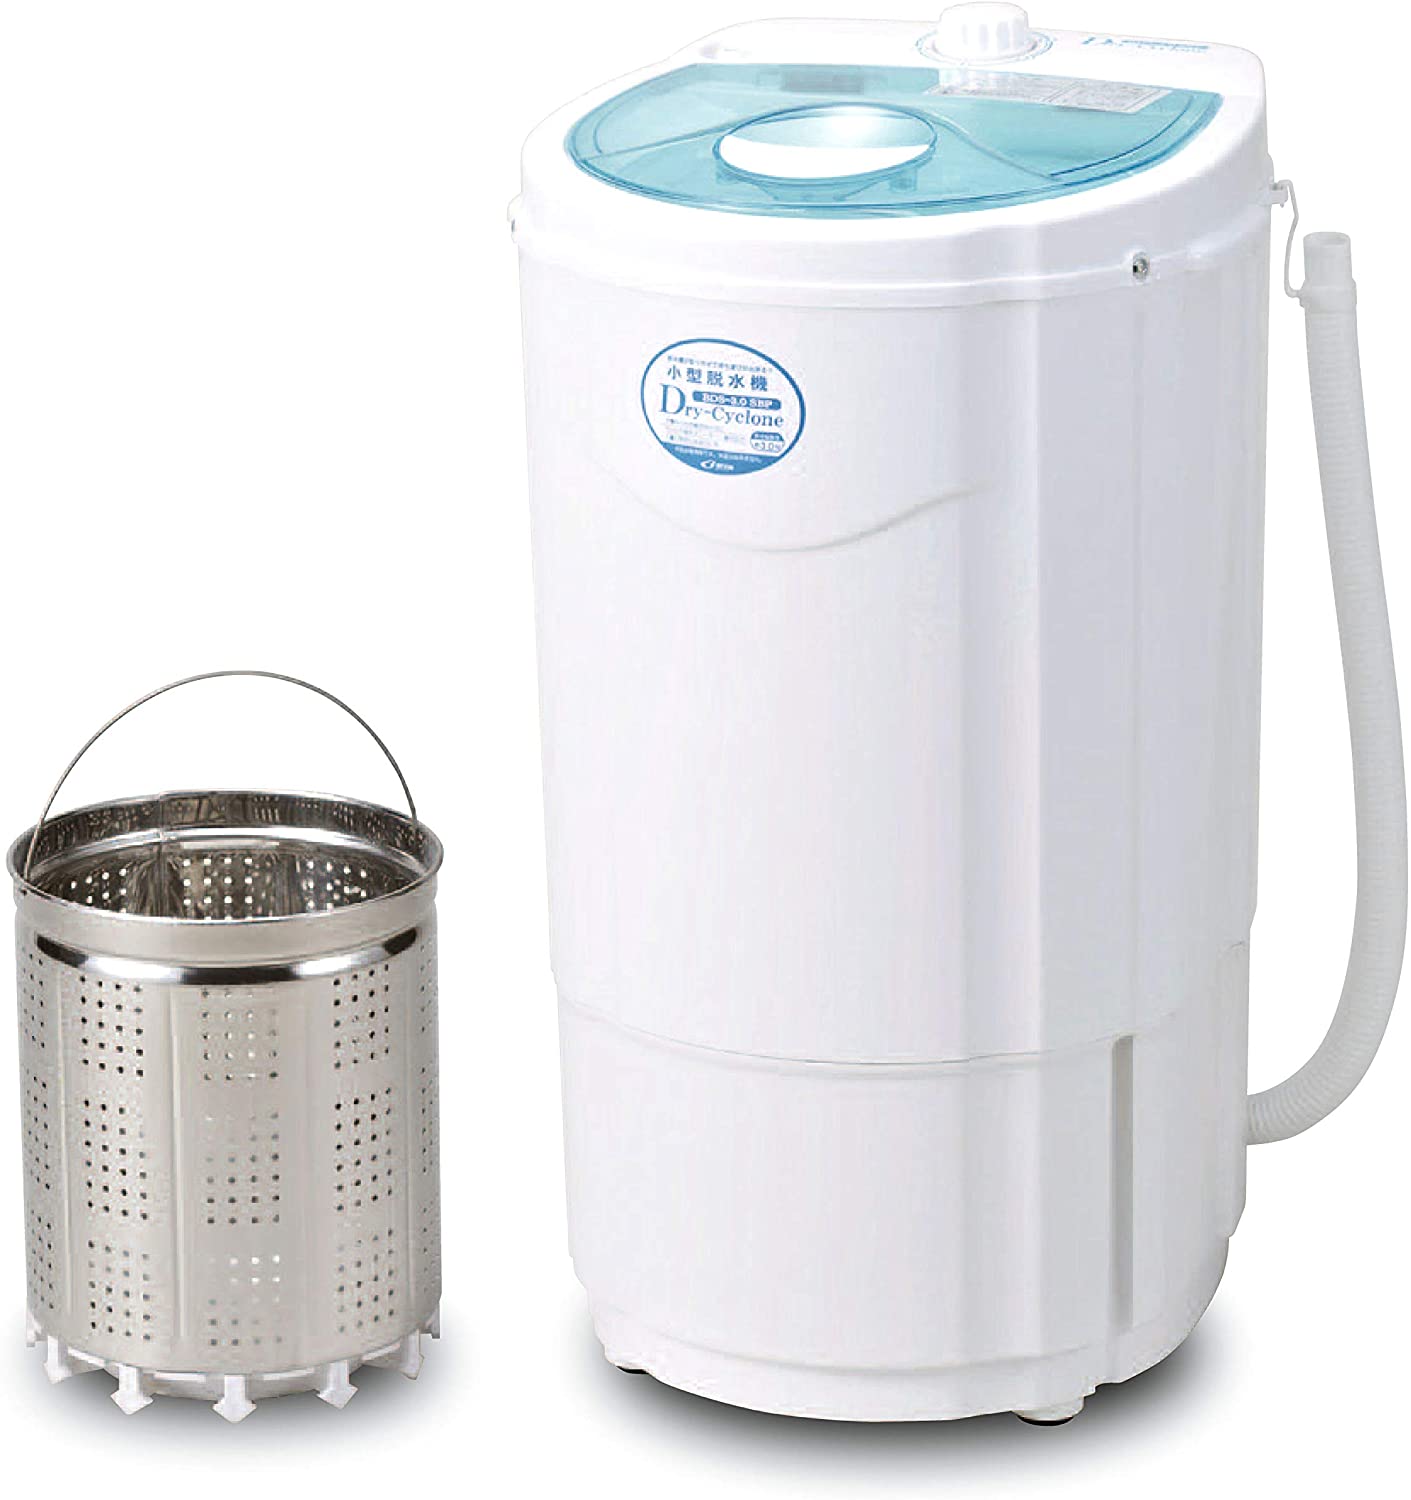 脱水機 小型 電動 小型脱水機 すすぎ脱水機能 - 衣類乾燥機